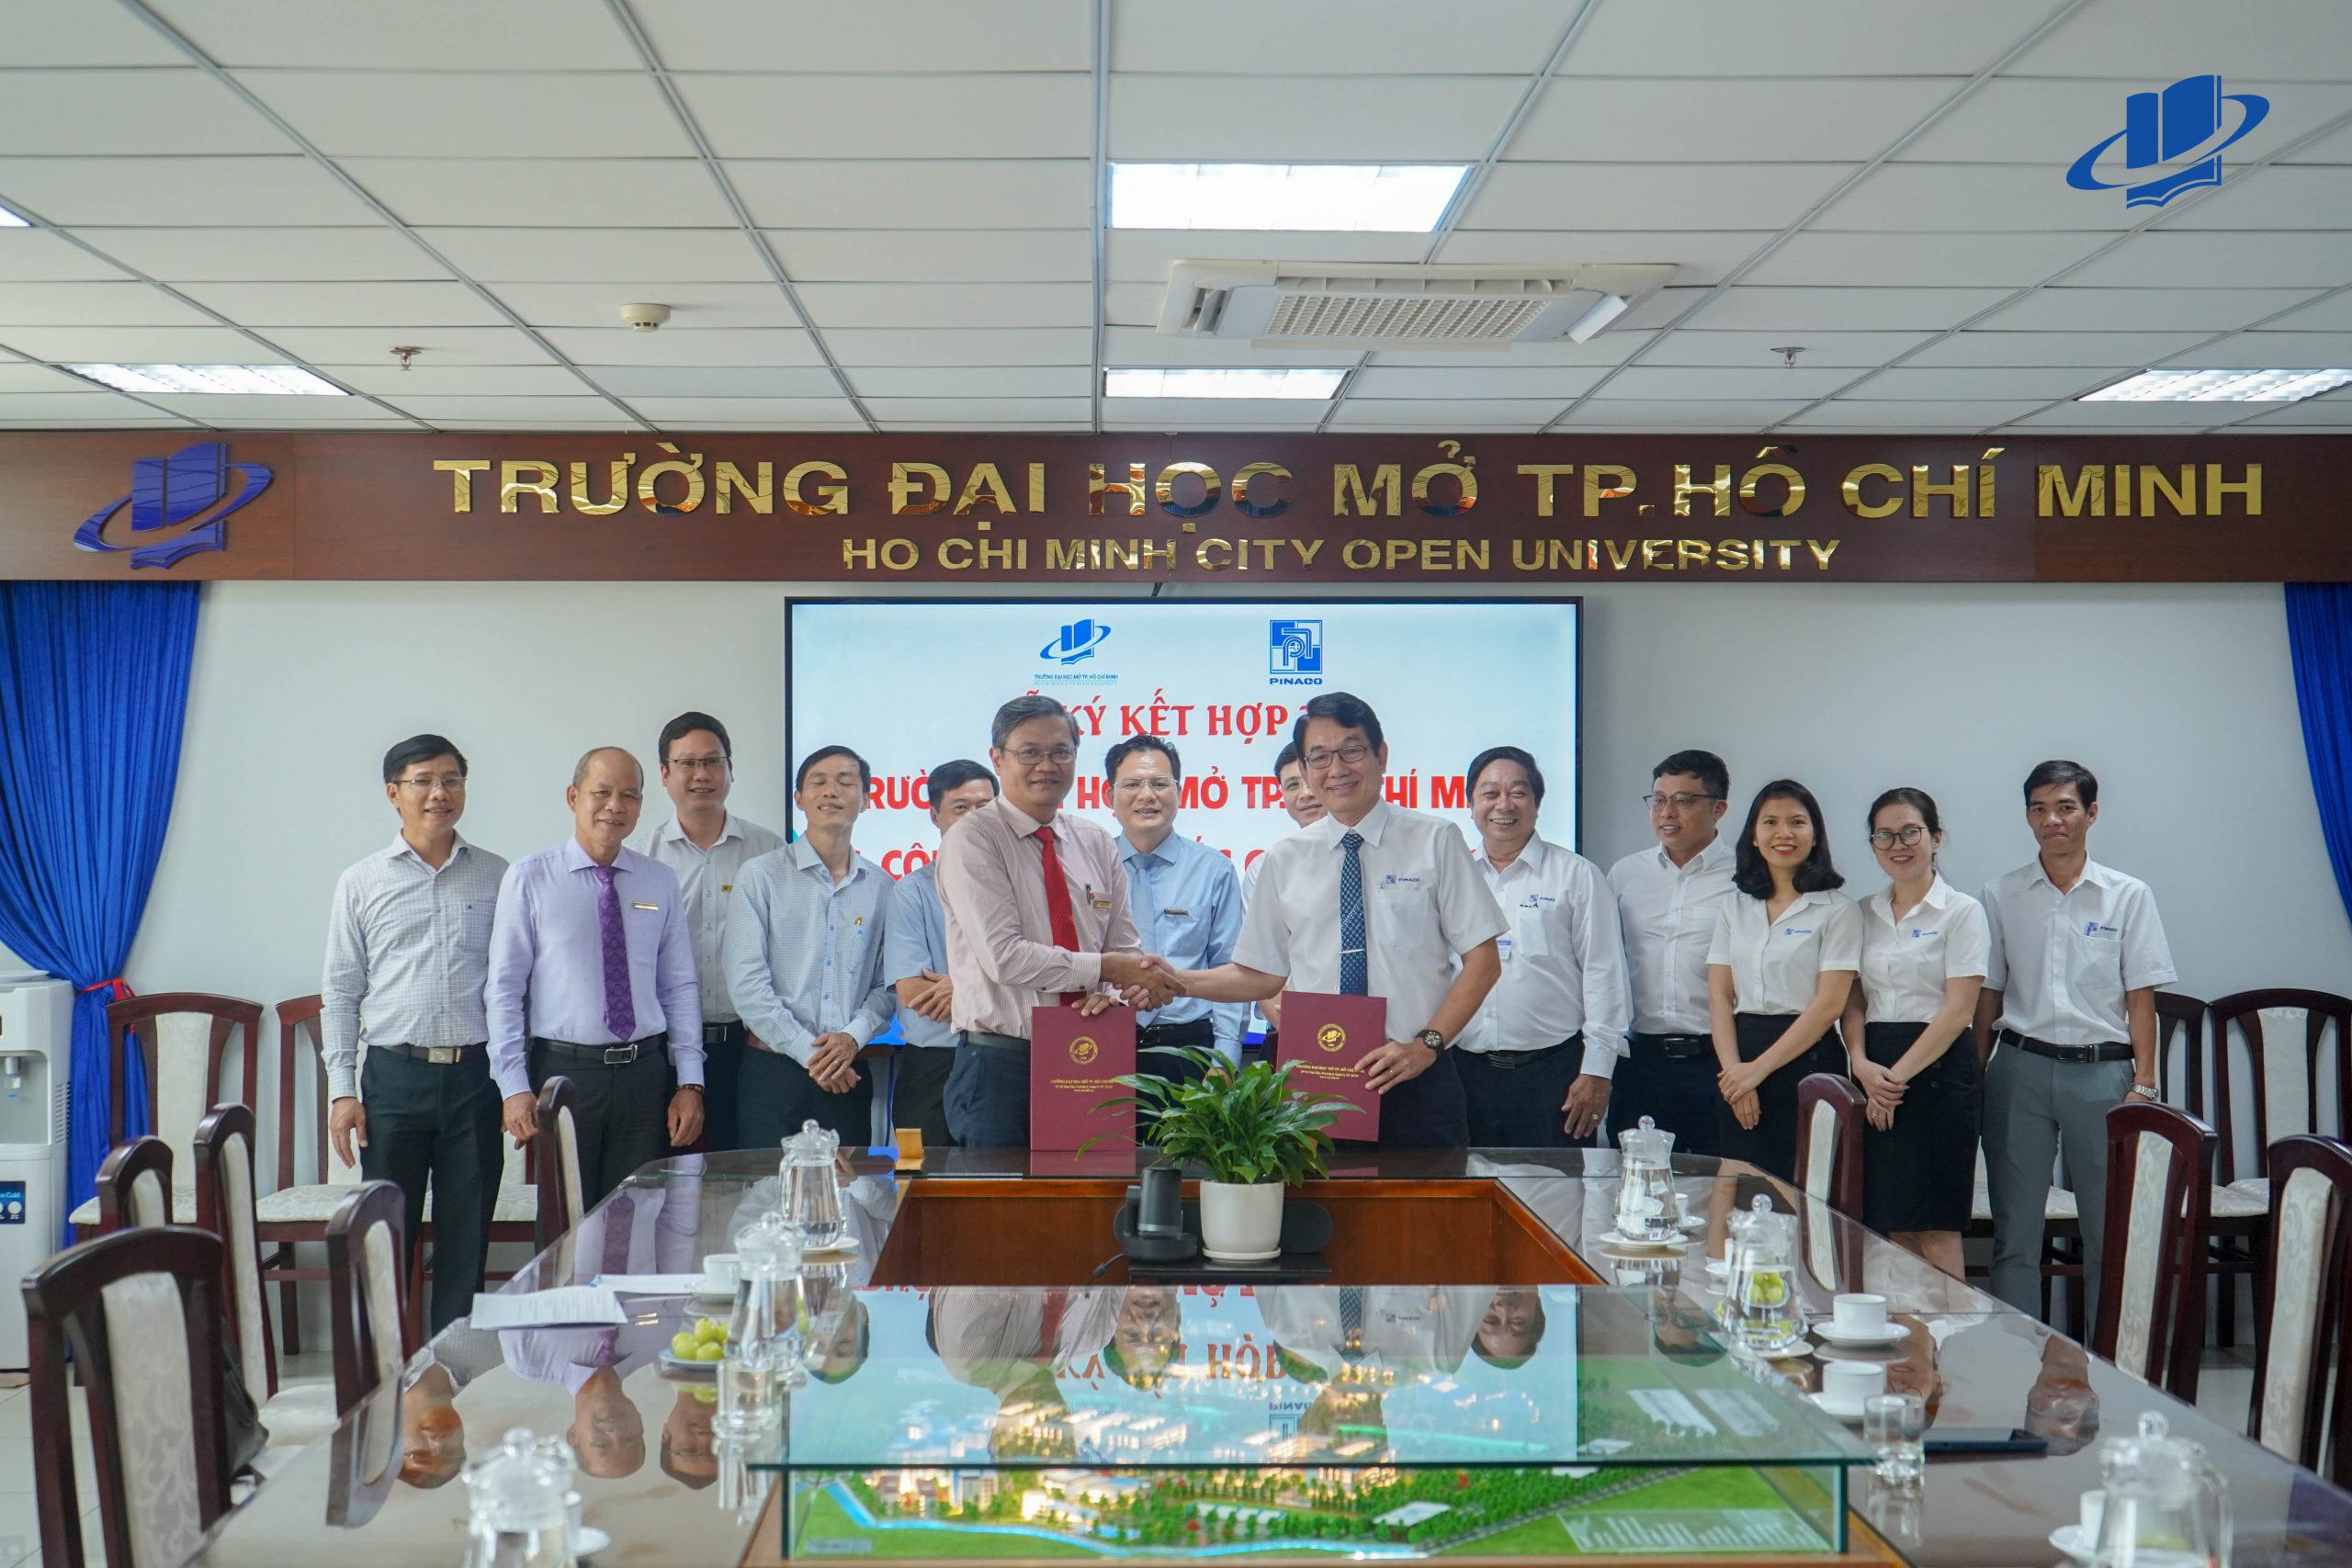 Lễ ký kết hợp tác hỗ trợ sinh viên giữa Trường Đại học Mở TP. Hồ Chí Minh và Công ty Cổ Phần Pin Ắc quy Miền Nam